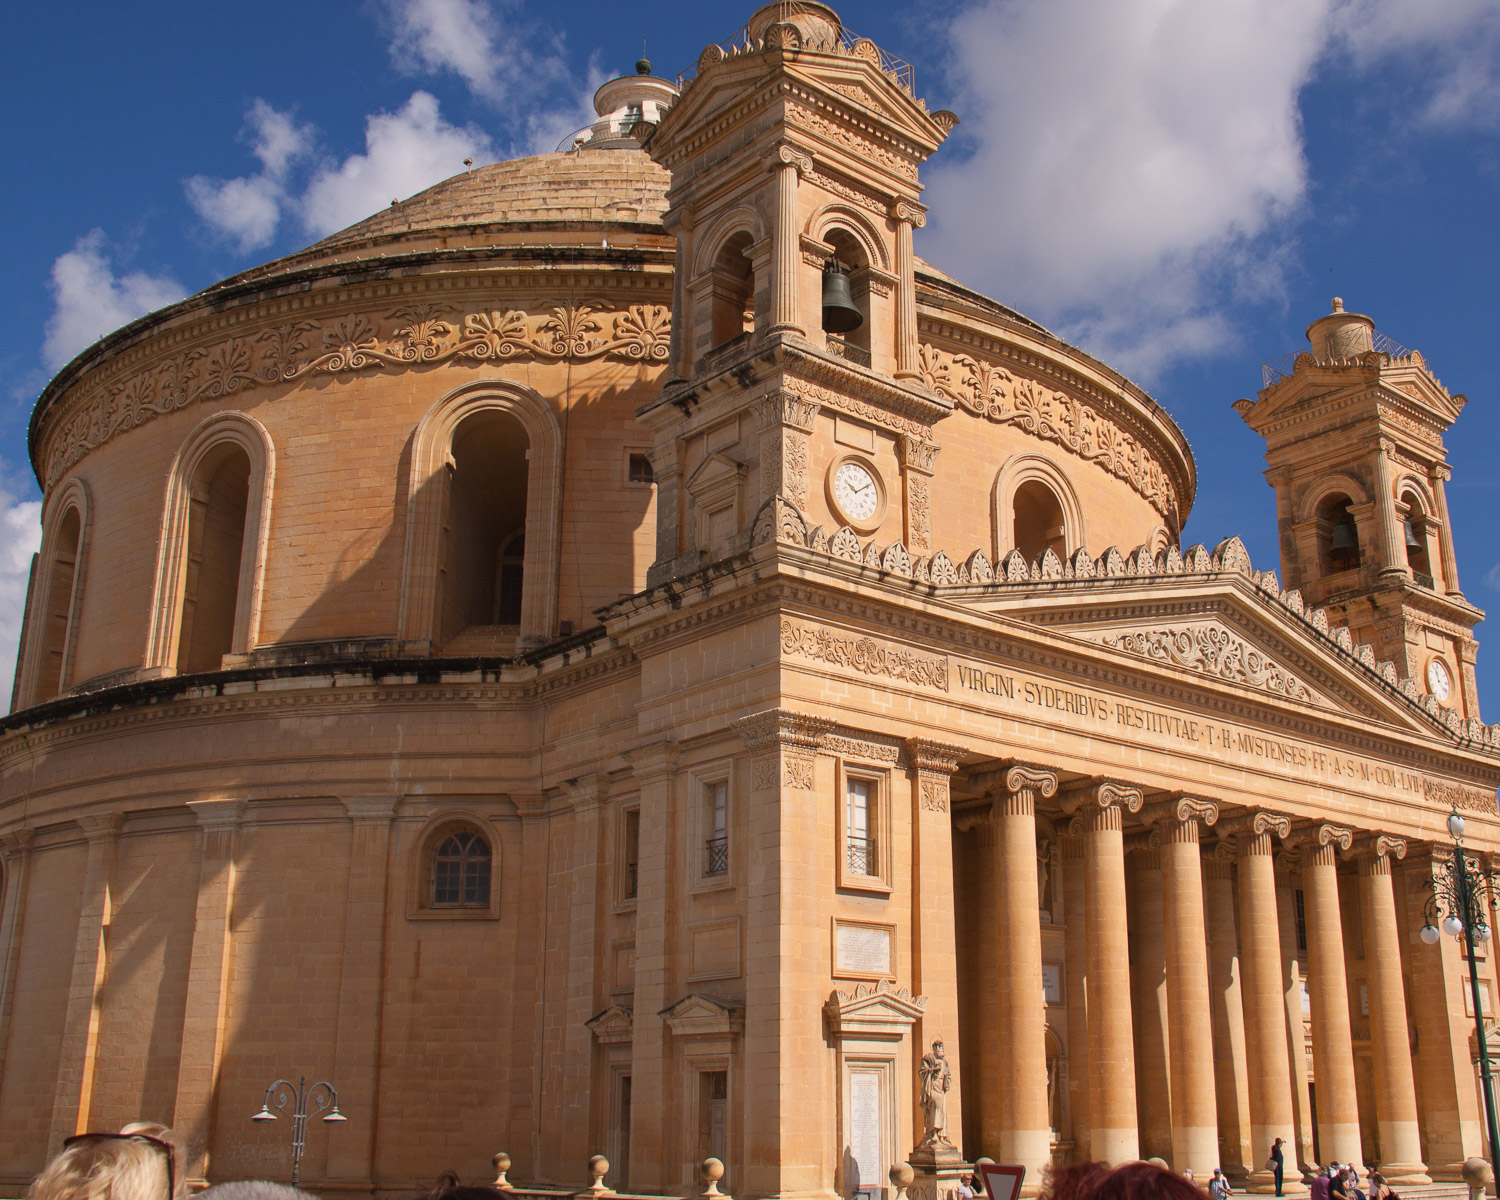 Mosta basilica Malta by Bjonsson on Pixabay